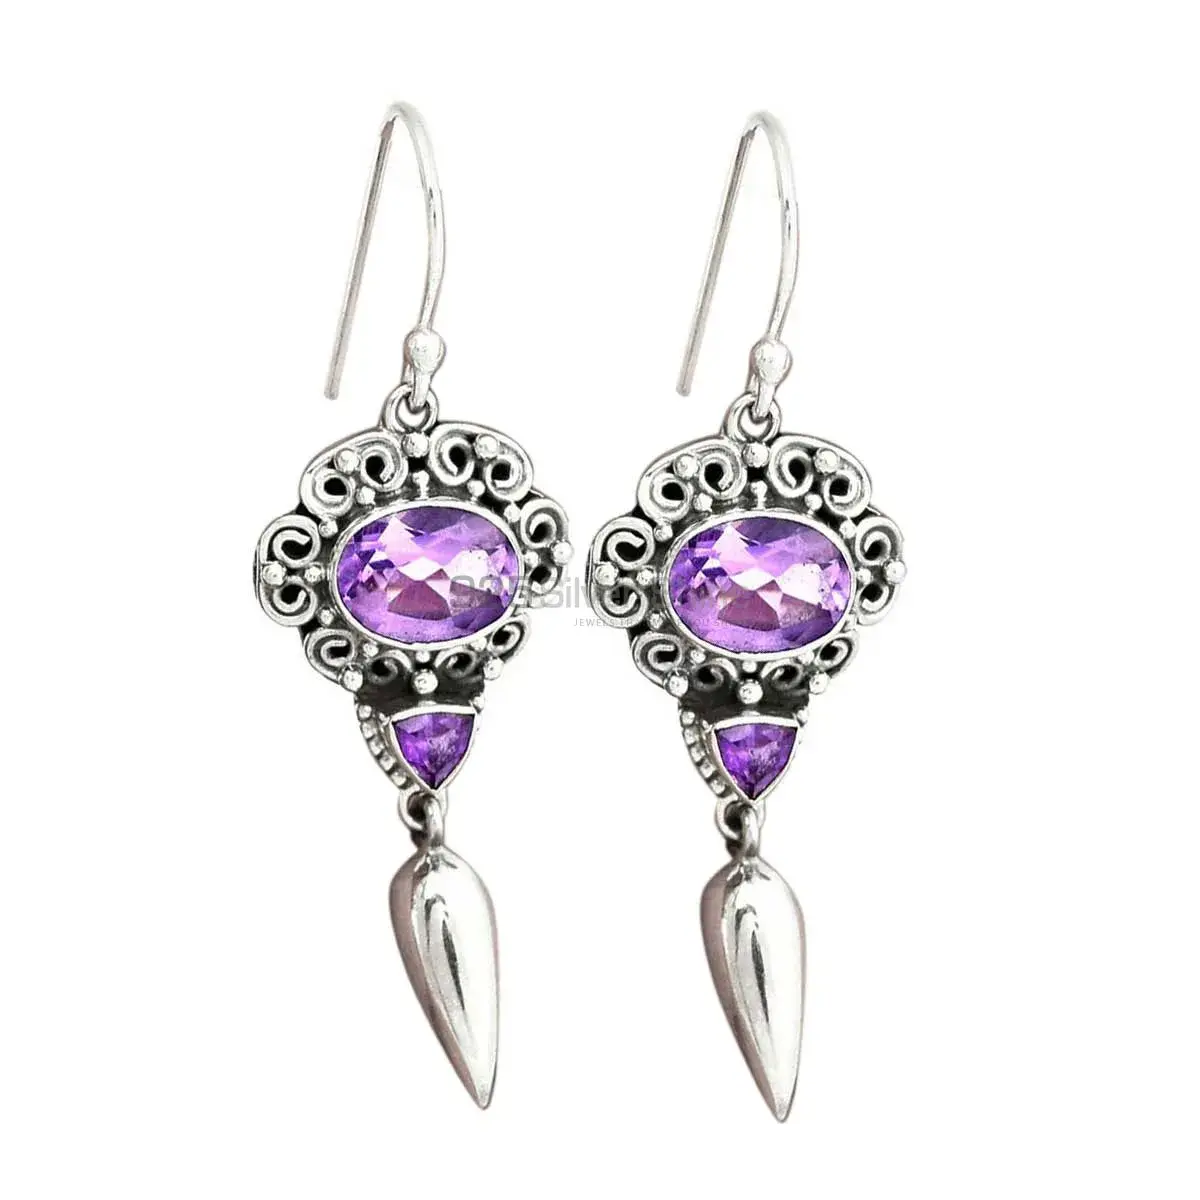 Genuine Amethyst Gemstone Earrings Suppliers In 925 Sterling Silver Jewelry 925SE2447